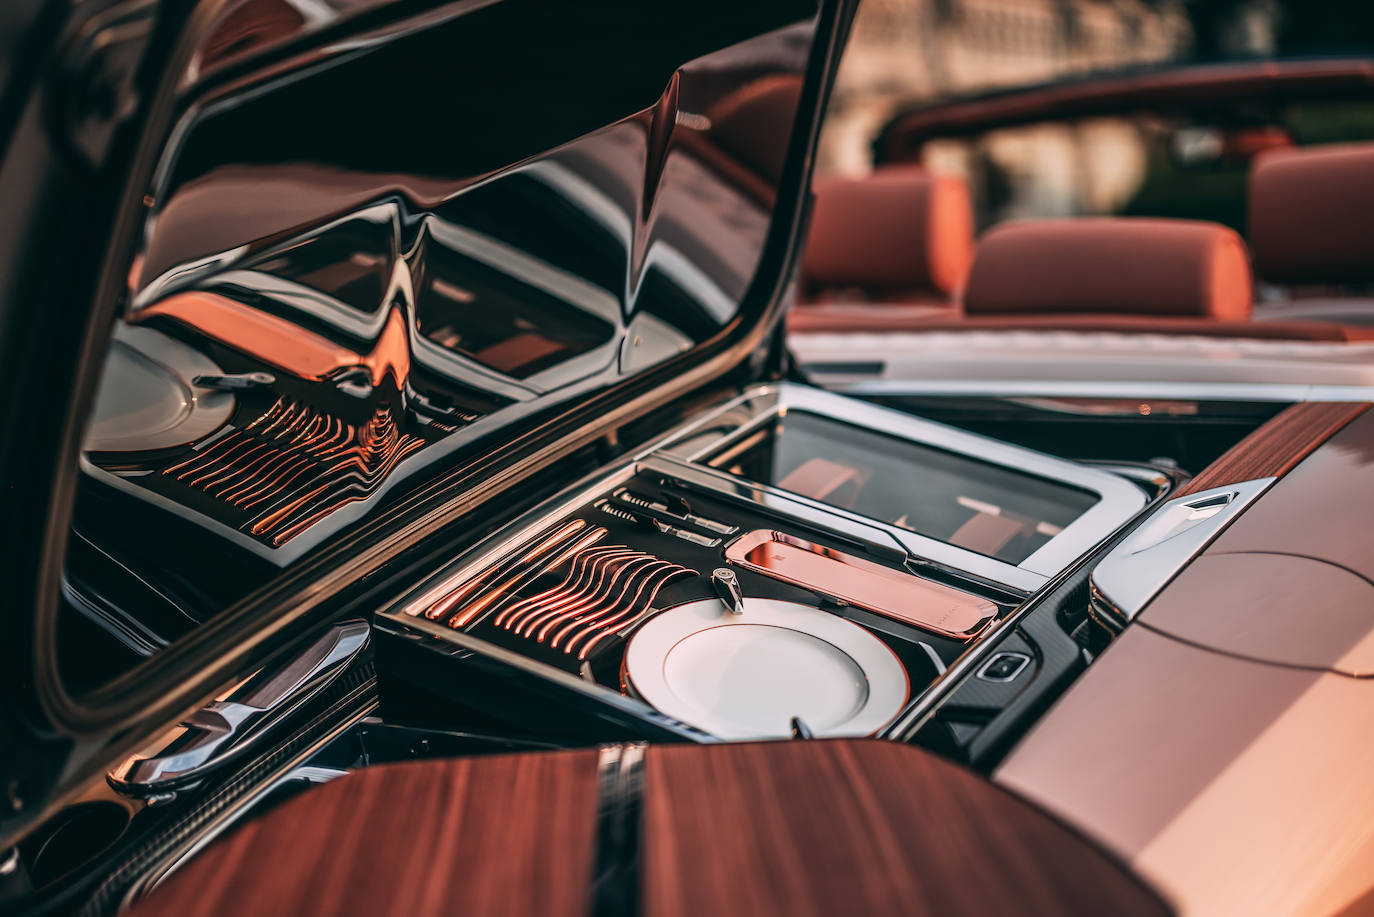 Fotos: Rolls-Royce Boat Tail